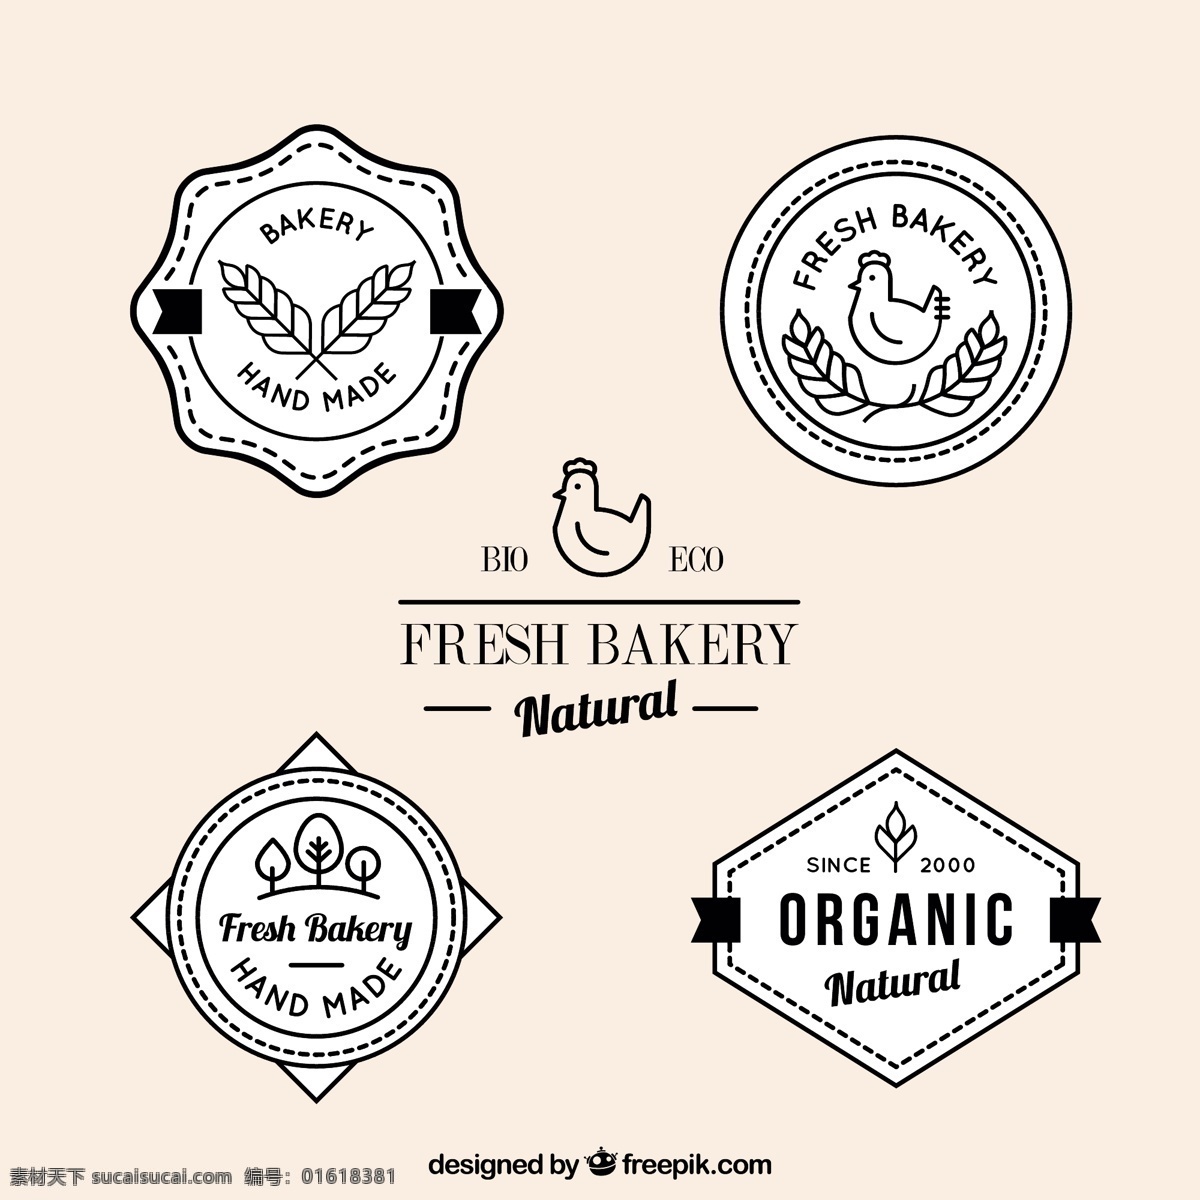 新 烘焙 产品 徽章 食物方面 蛋糕 面包 手绘 标签 鸡肉 小麦 有机 甜 绘画 贴纸 自然 清新 糕点 吸引 白色